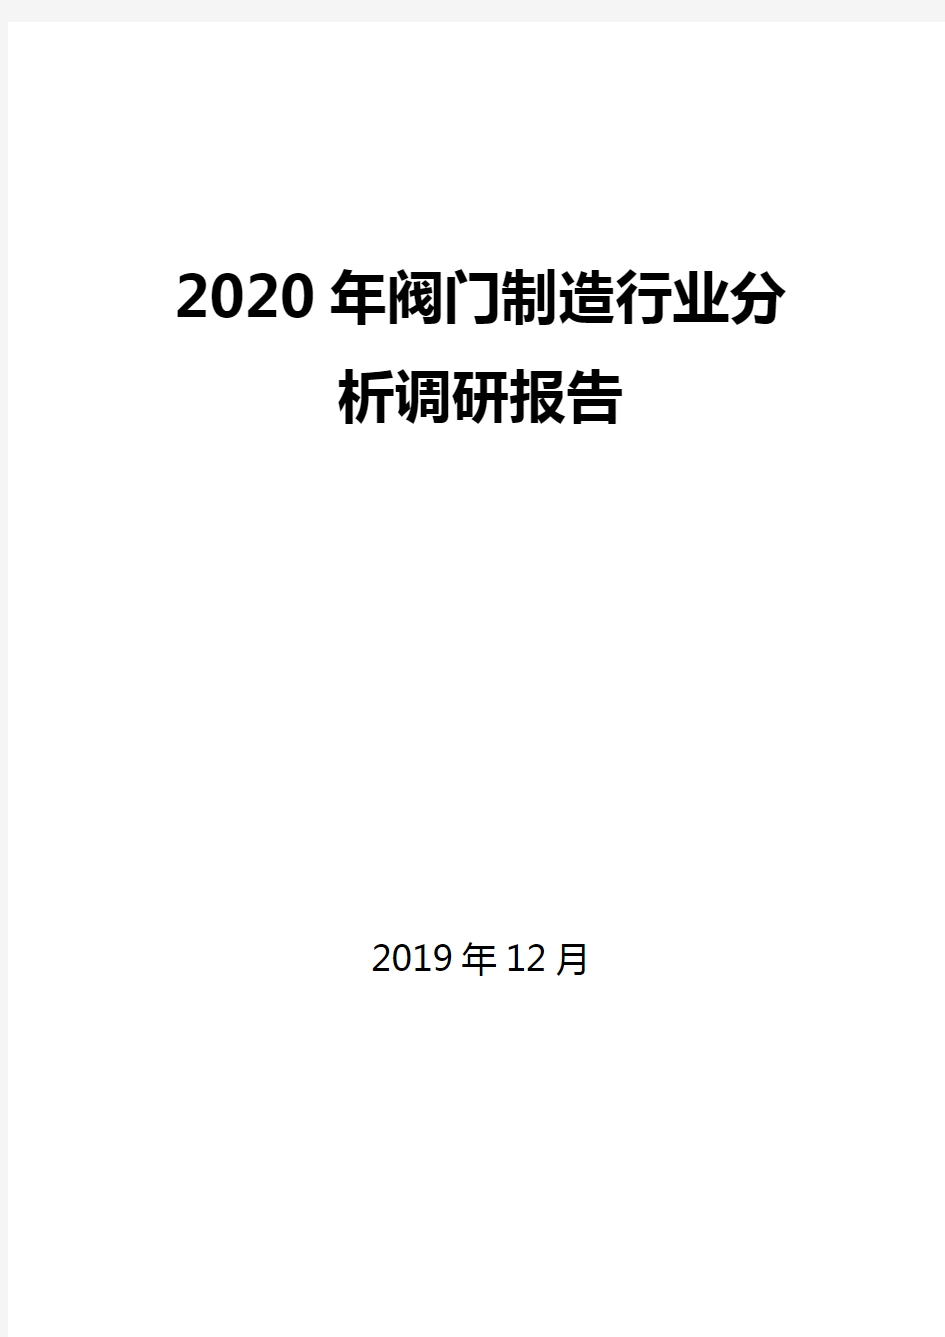 2020年阀门制造行业分析调研报告